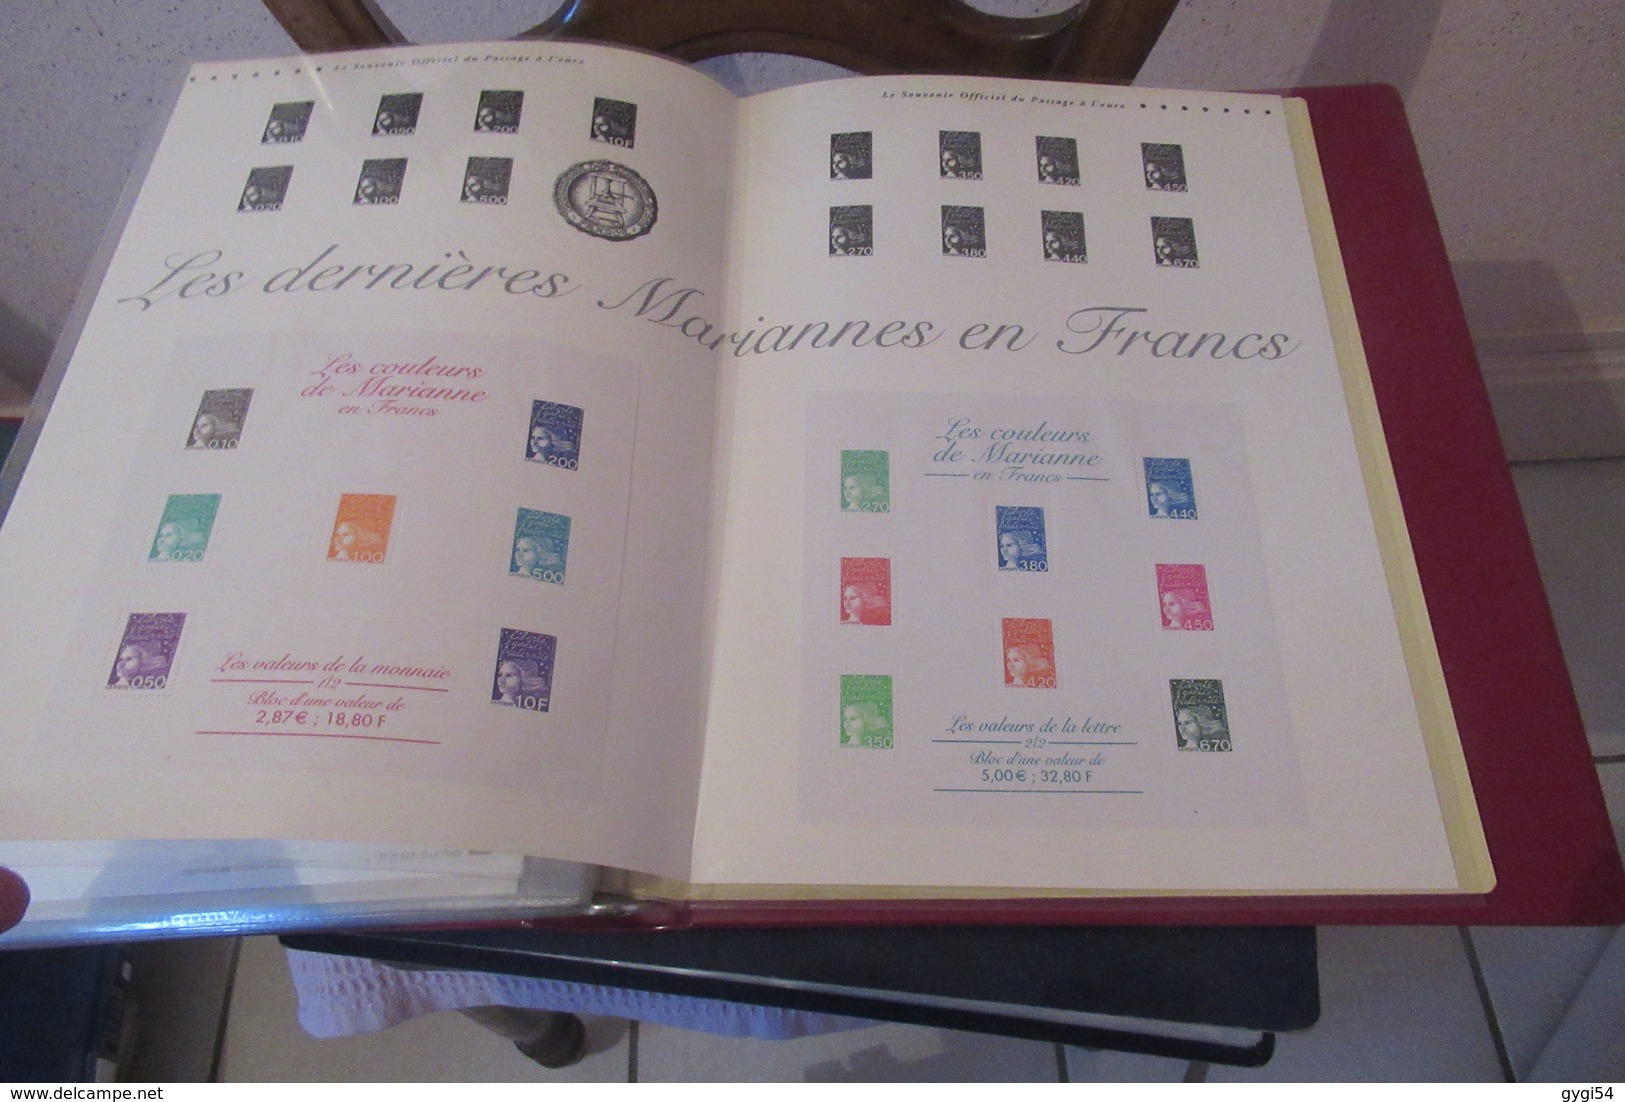 France 2001  Année complète   Documents Blocs compris ( le siècle au fil du timbre Bruegel l' Ancien, , ETC ... 50 scans